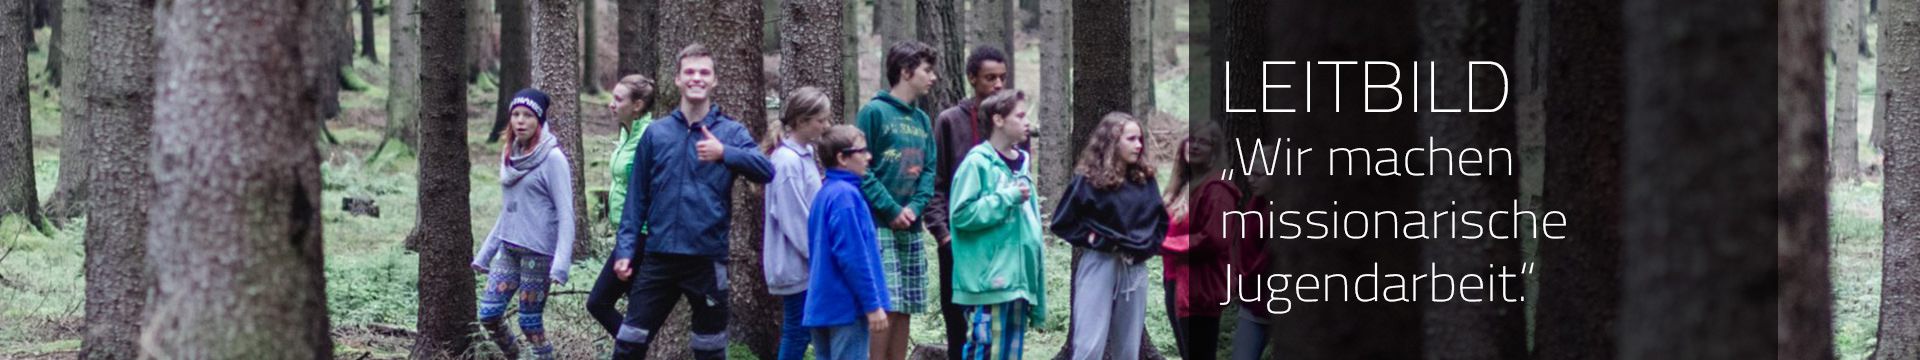 Bild von Jugendlichen im Wald